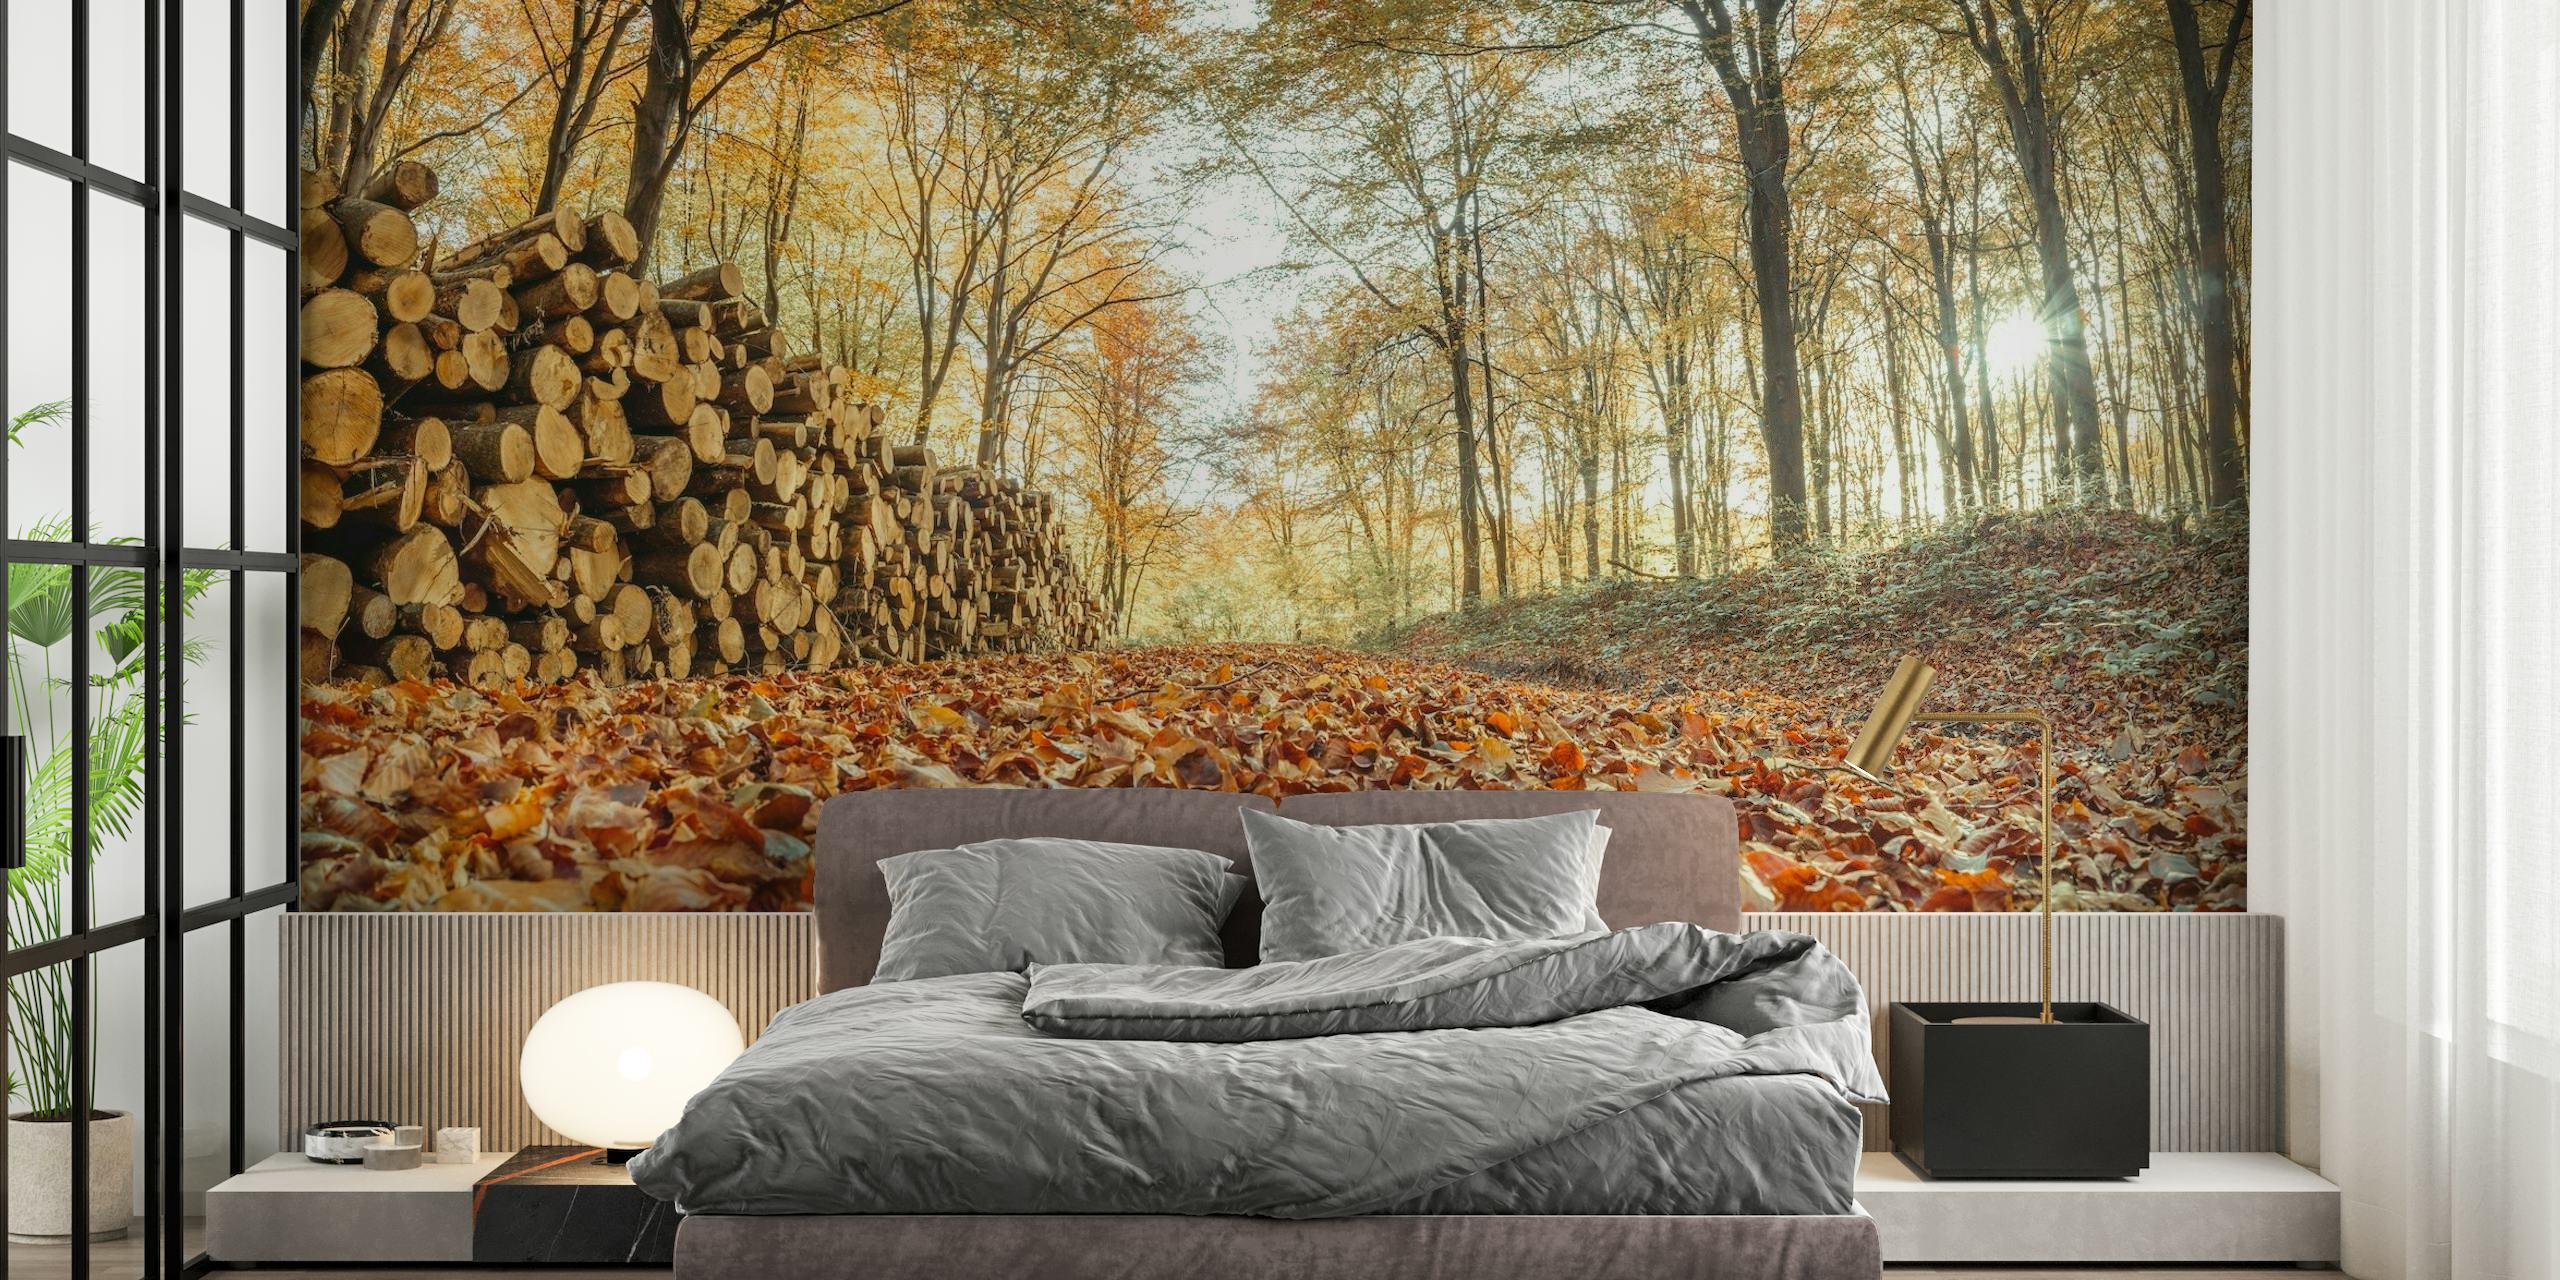 Uma cena aconchegante de floresta de outono com uma pilha de troncos e um cobertor de folhas caídas